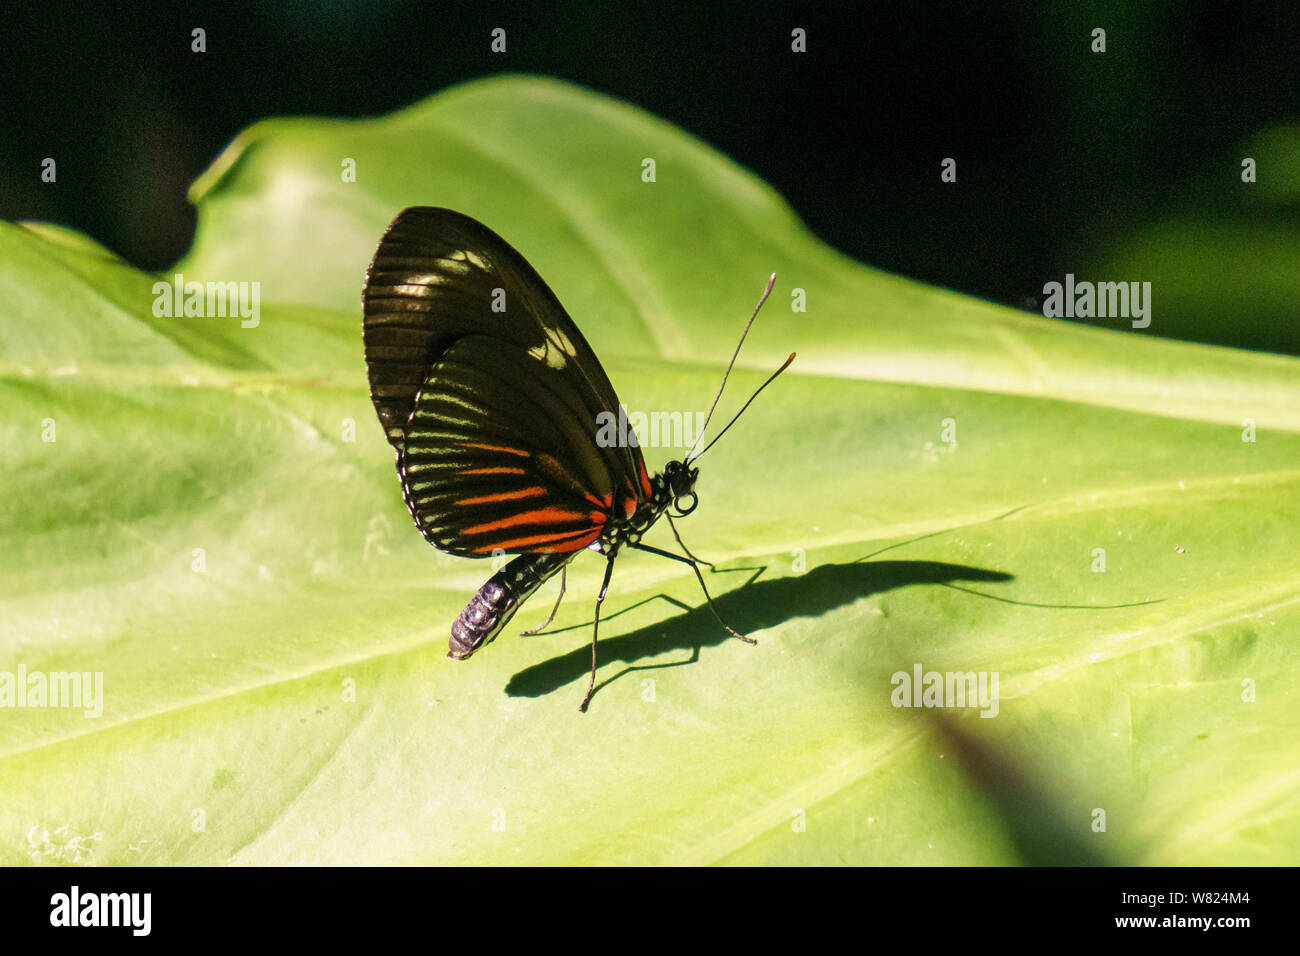 bella piccola farfalla con ali colorate su foglia verde. Foto Stock